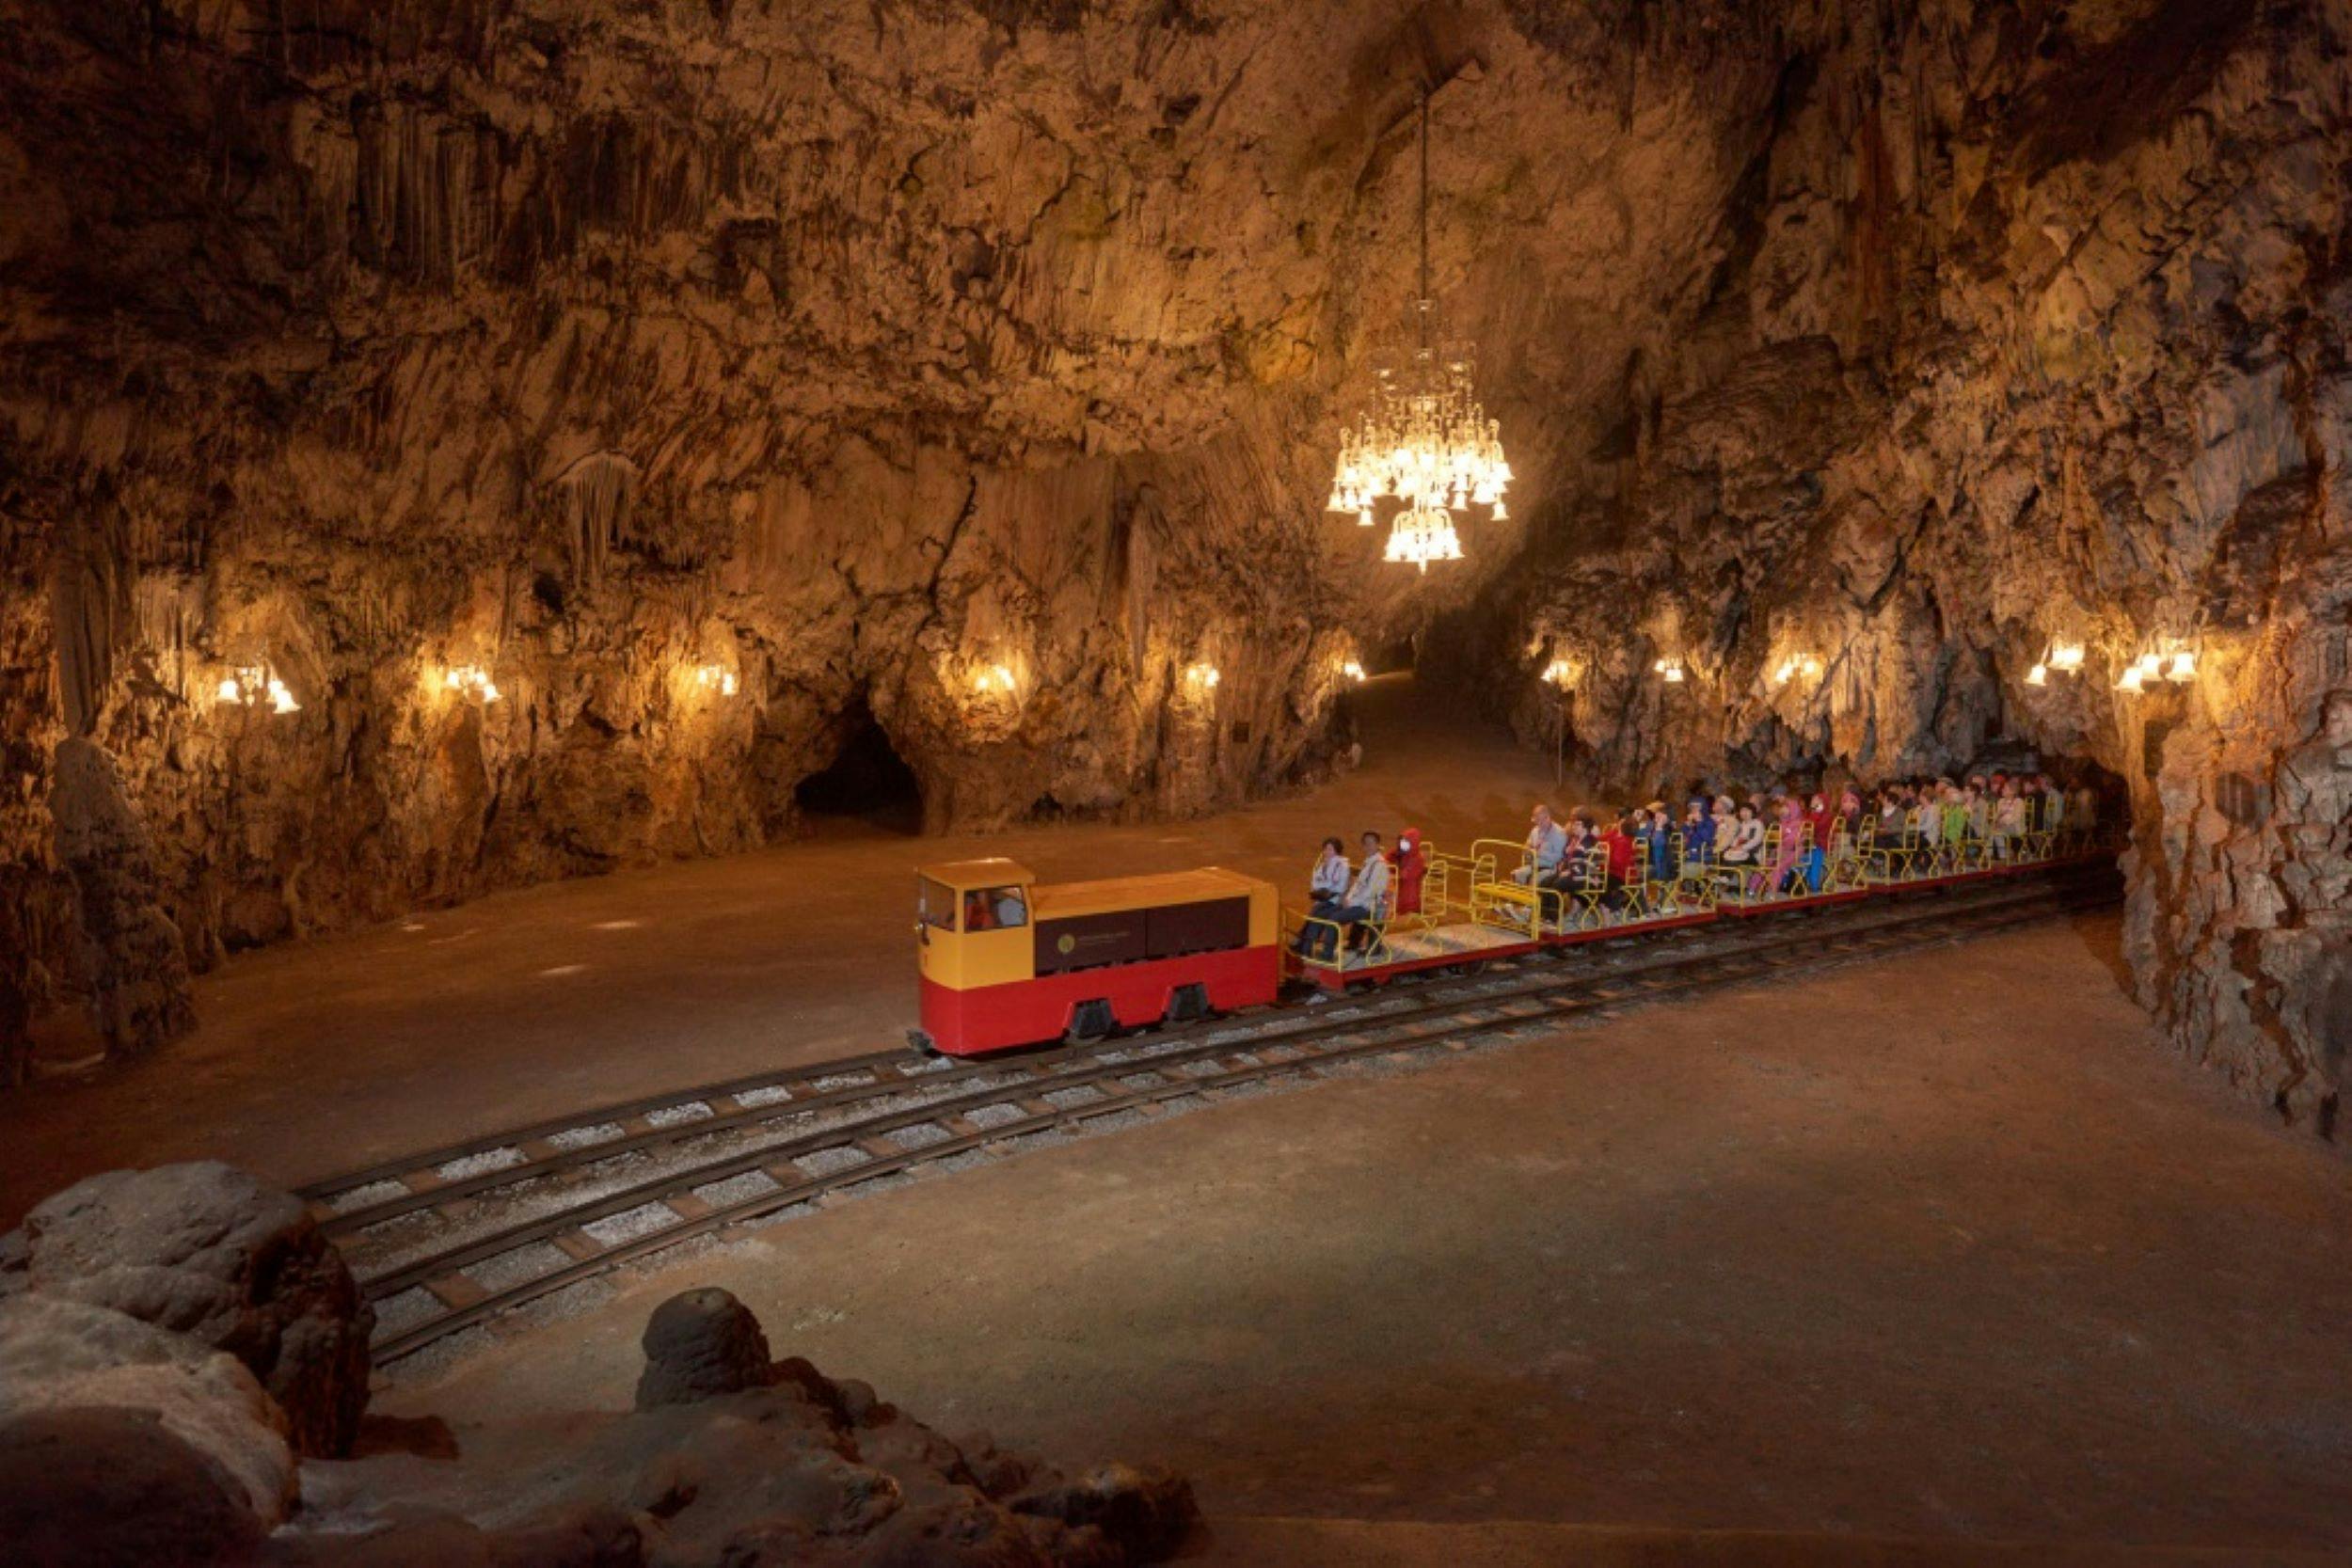 Stadnina Koni Lipica i wycieczka do jaskini Postojna z wybrzeża słoweńskiego